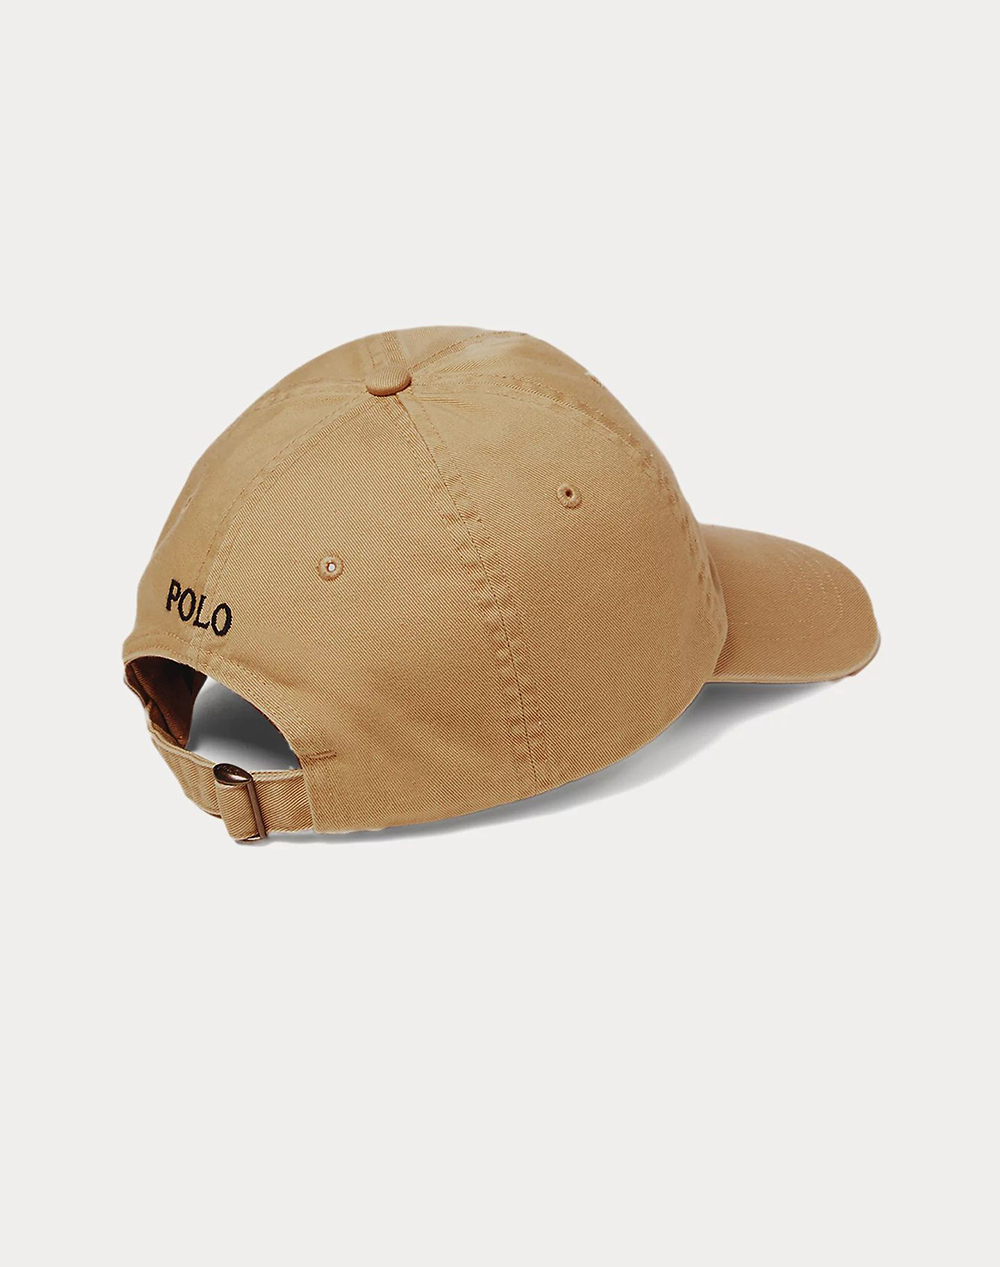 RALPH LAUREN SPORT CAP-HAT